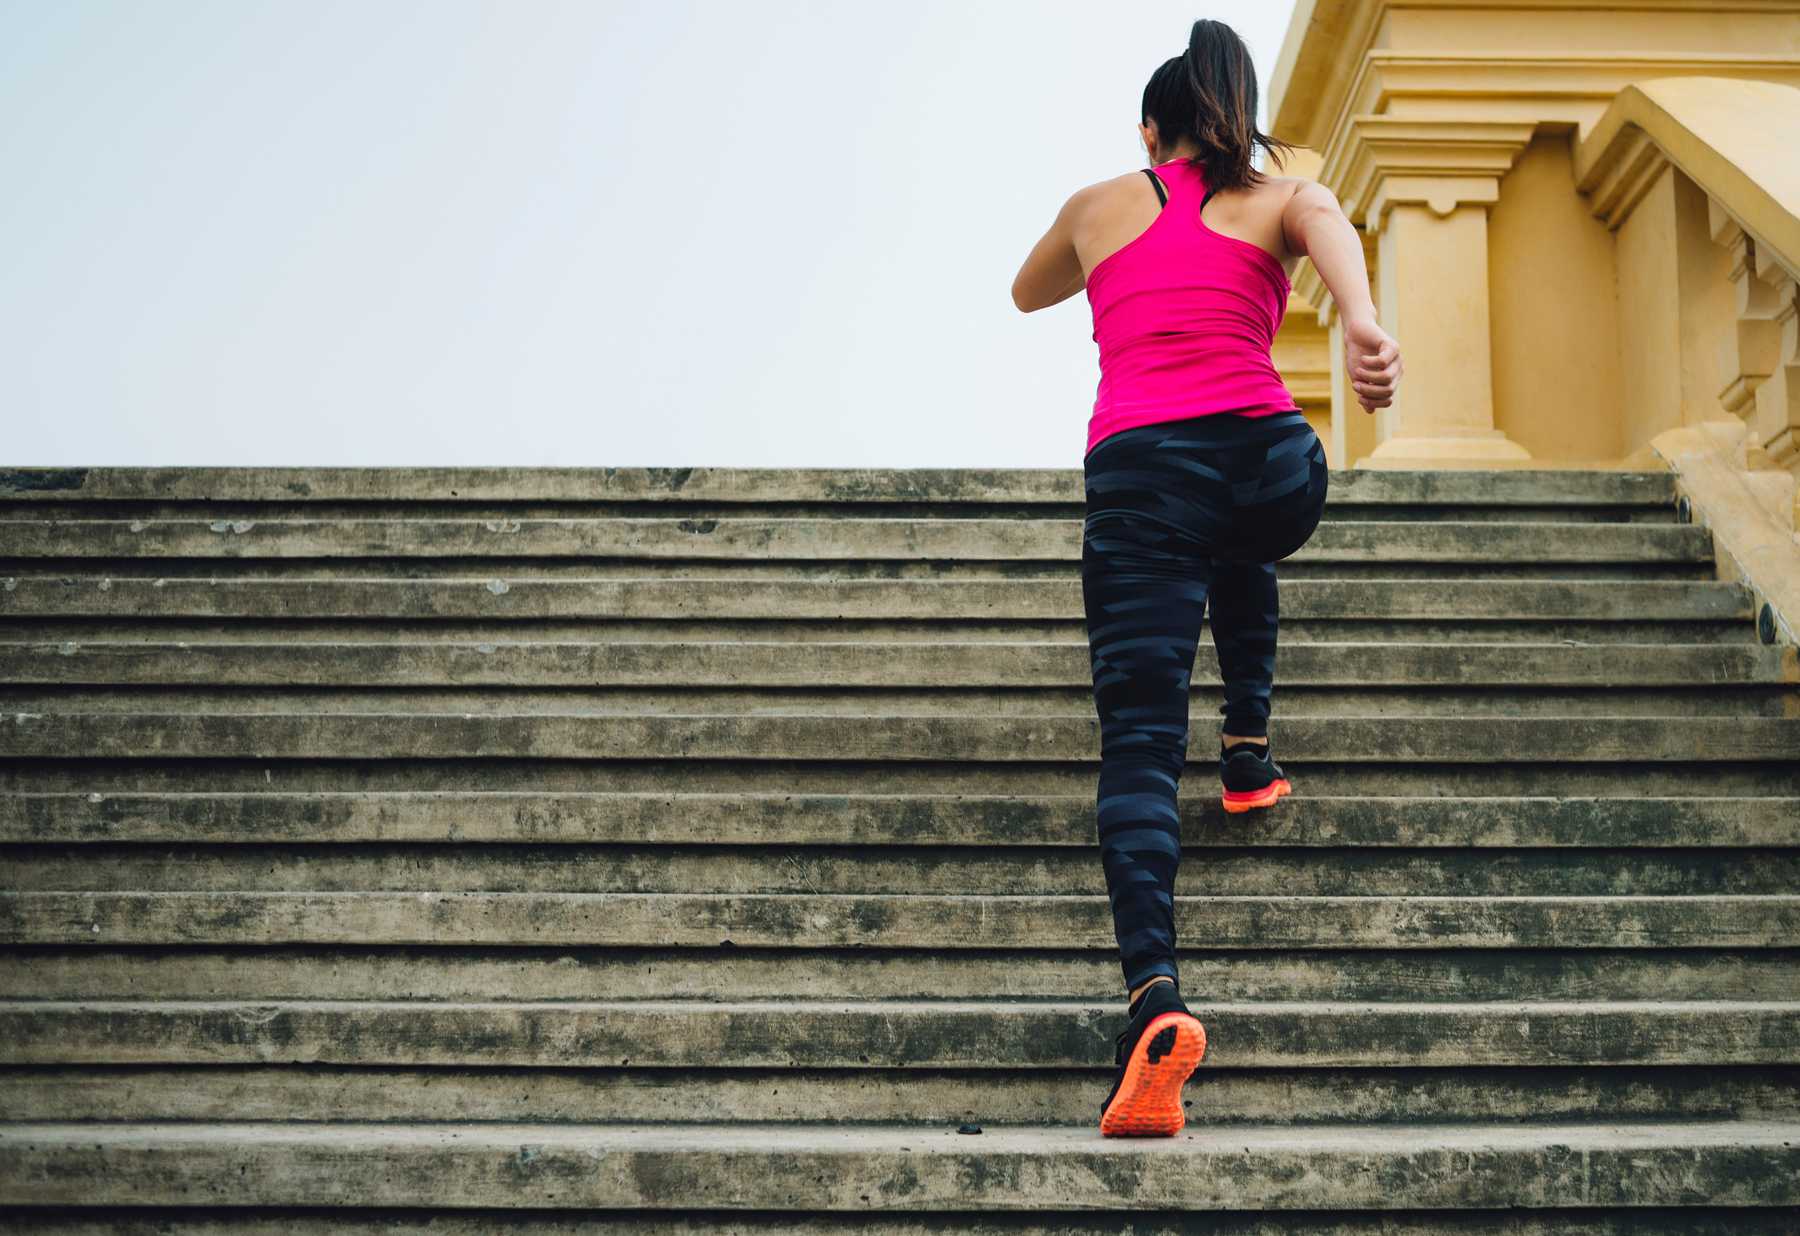 Бег по лестнице в подъезде для похудения: сколько сжигается калорий и можно ли похудеть